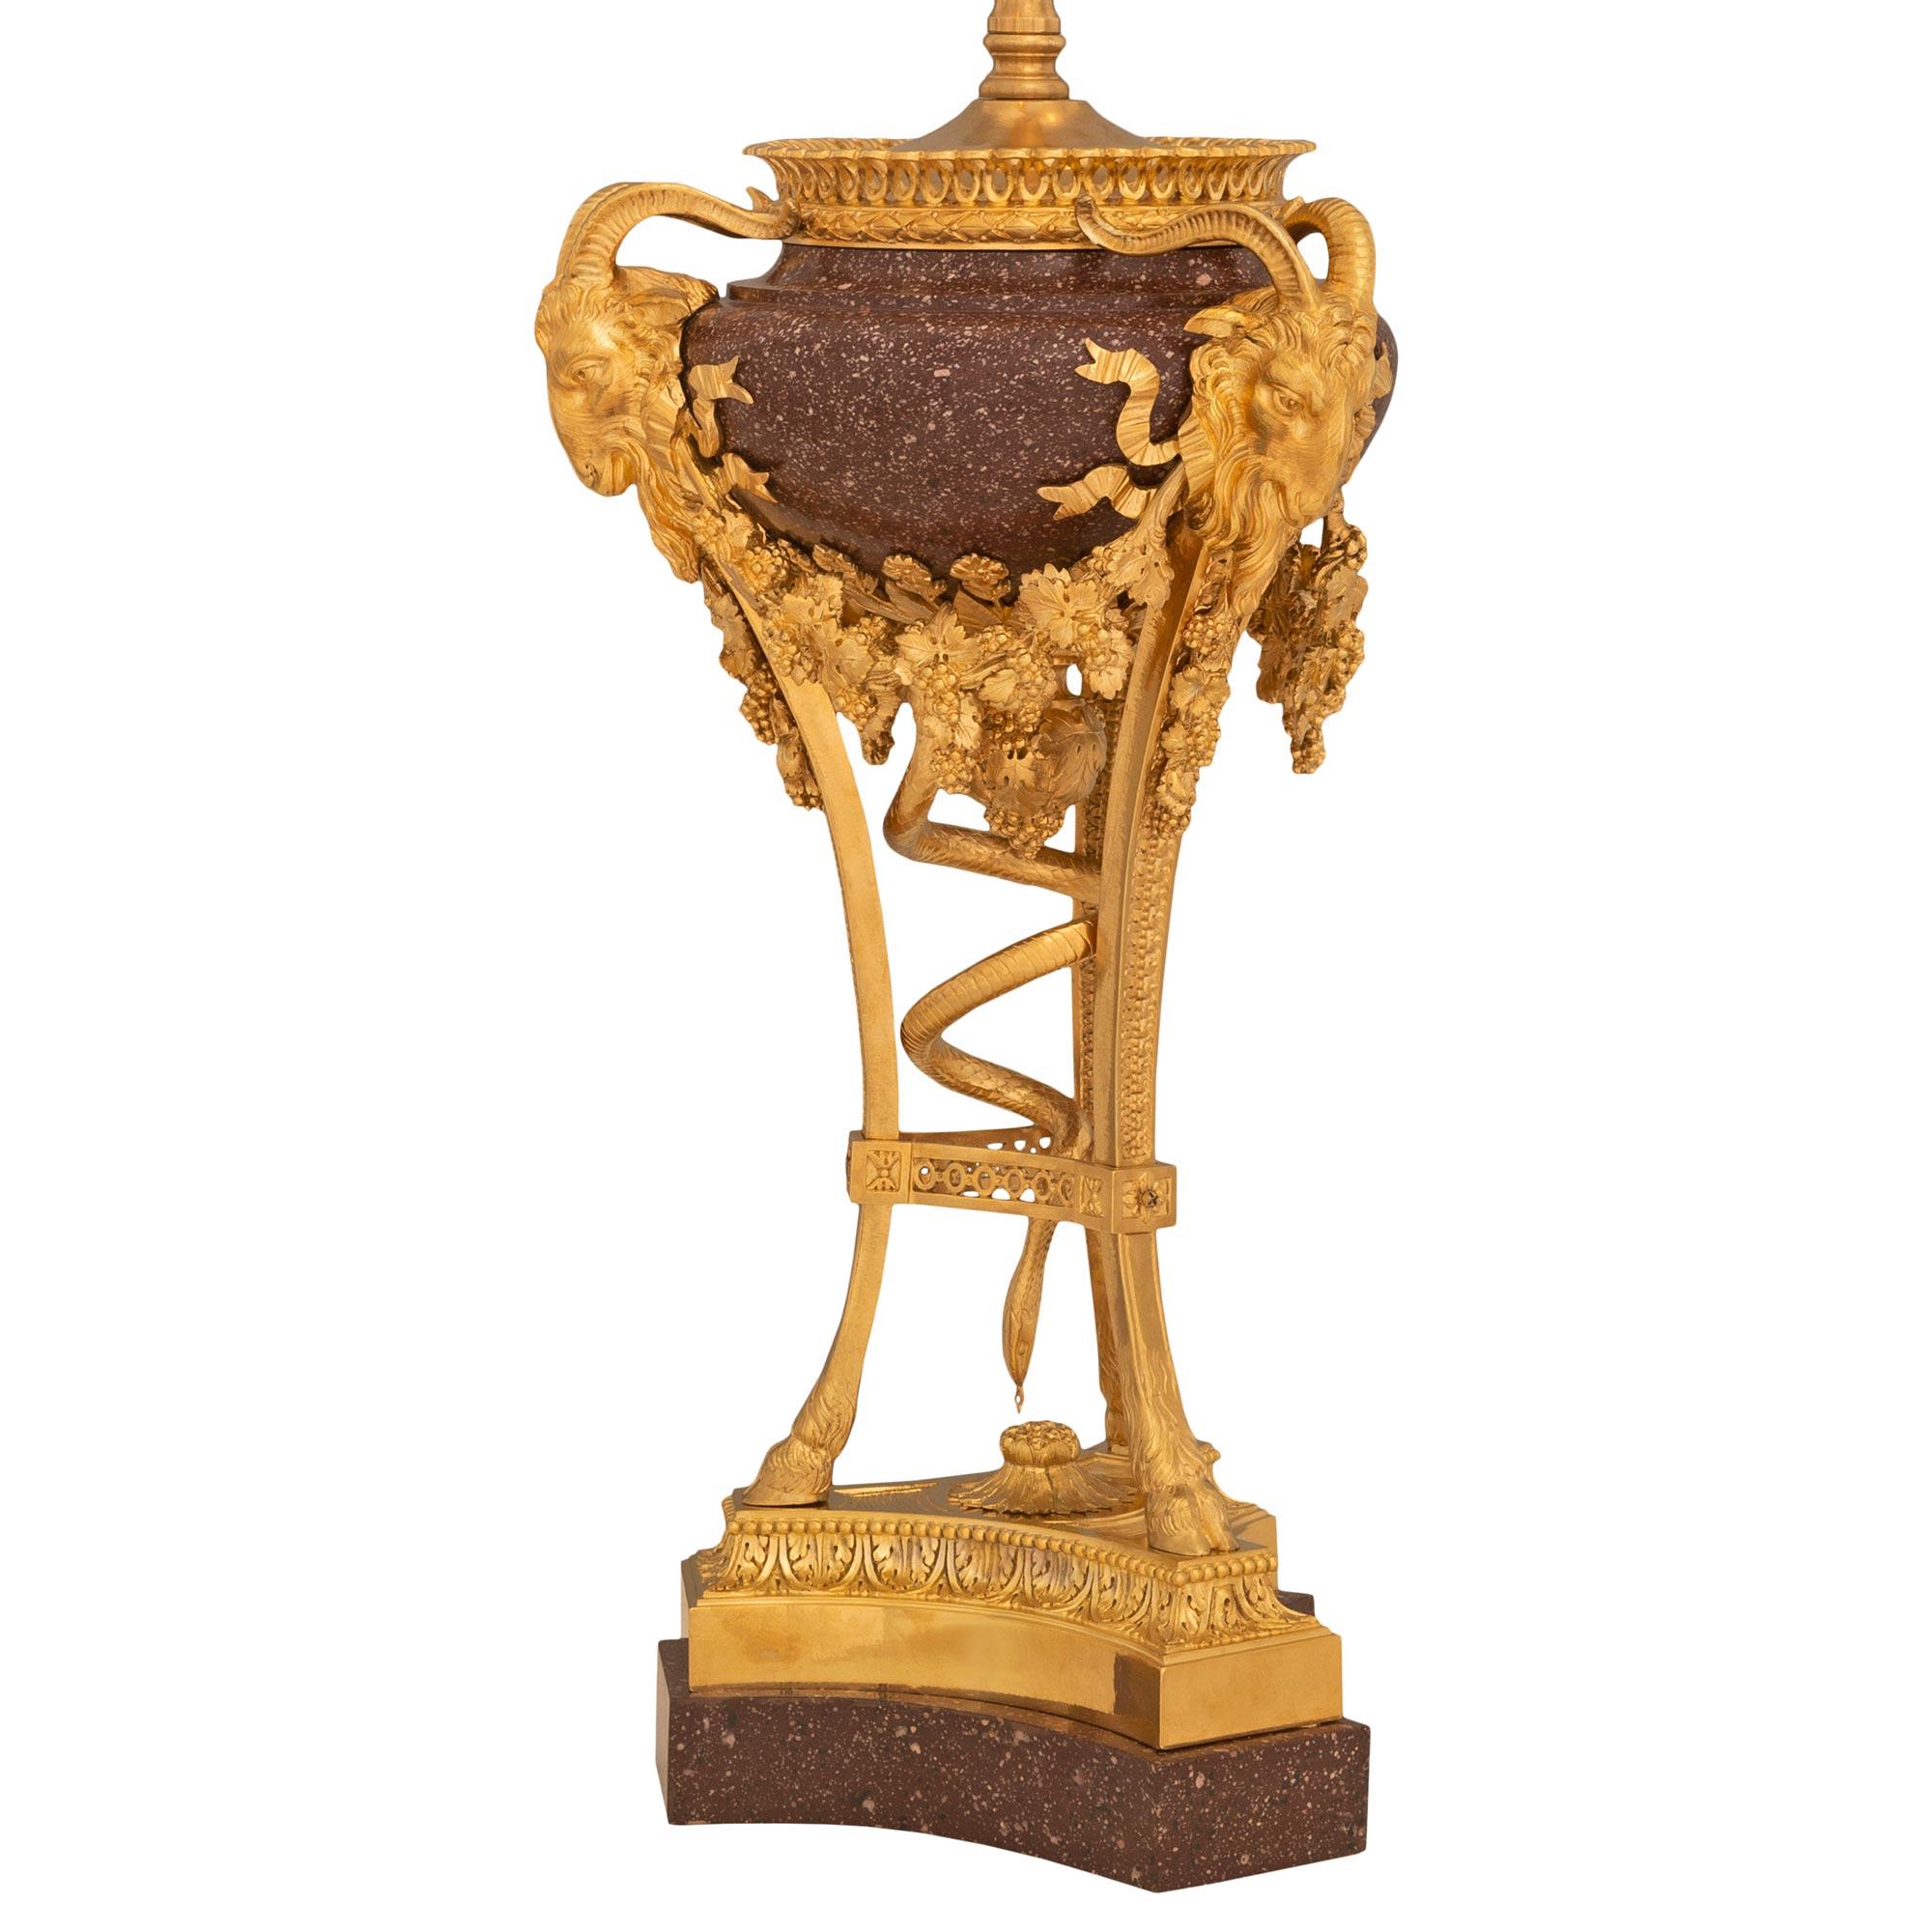 Exceptionnelle lampe de très haute qualité, de style Louis XVI, du XIXe siècle, en porcelaine, bronze doré et fausse peinture, attribuée à Sormani. La lampe Brûle parfum repose sur une élégante base circulaire marbrée et merveilleusement exécutée en